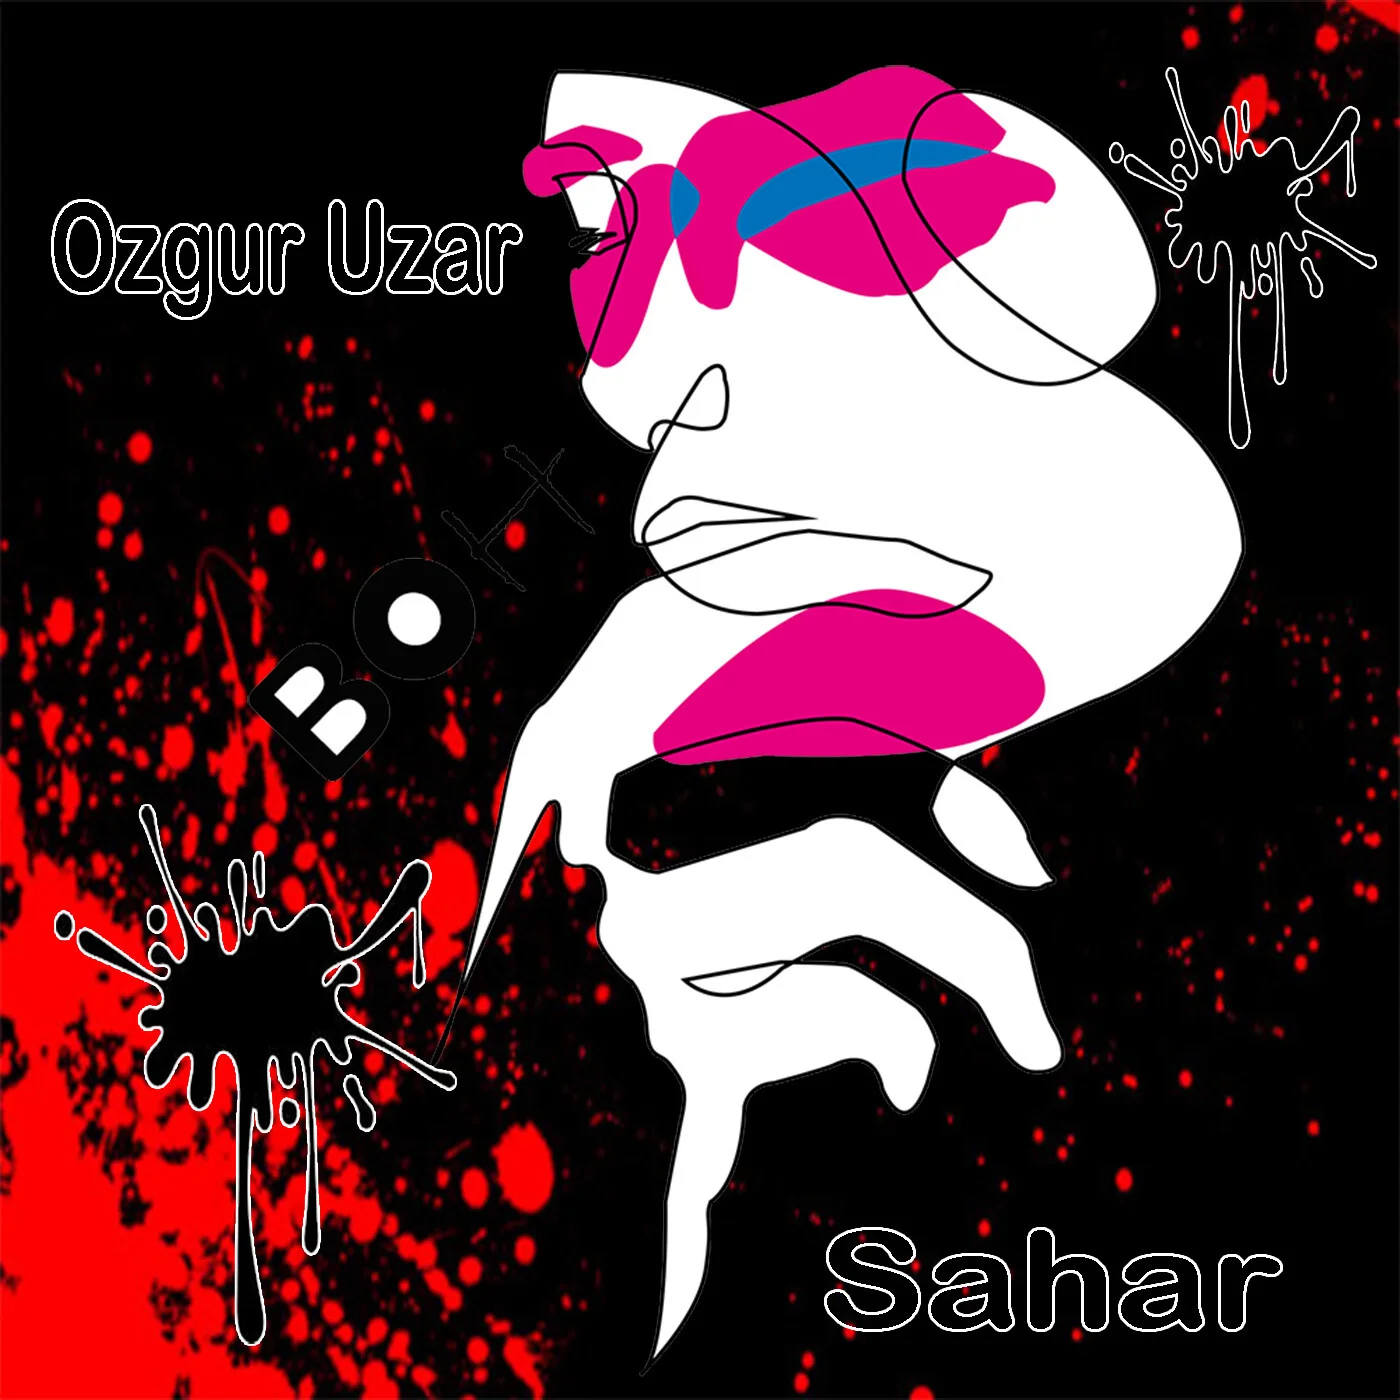 Ozgur Uzar - Sahar (Original Mix)